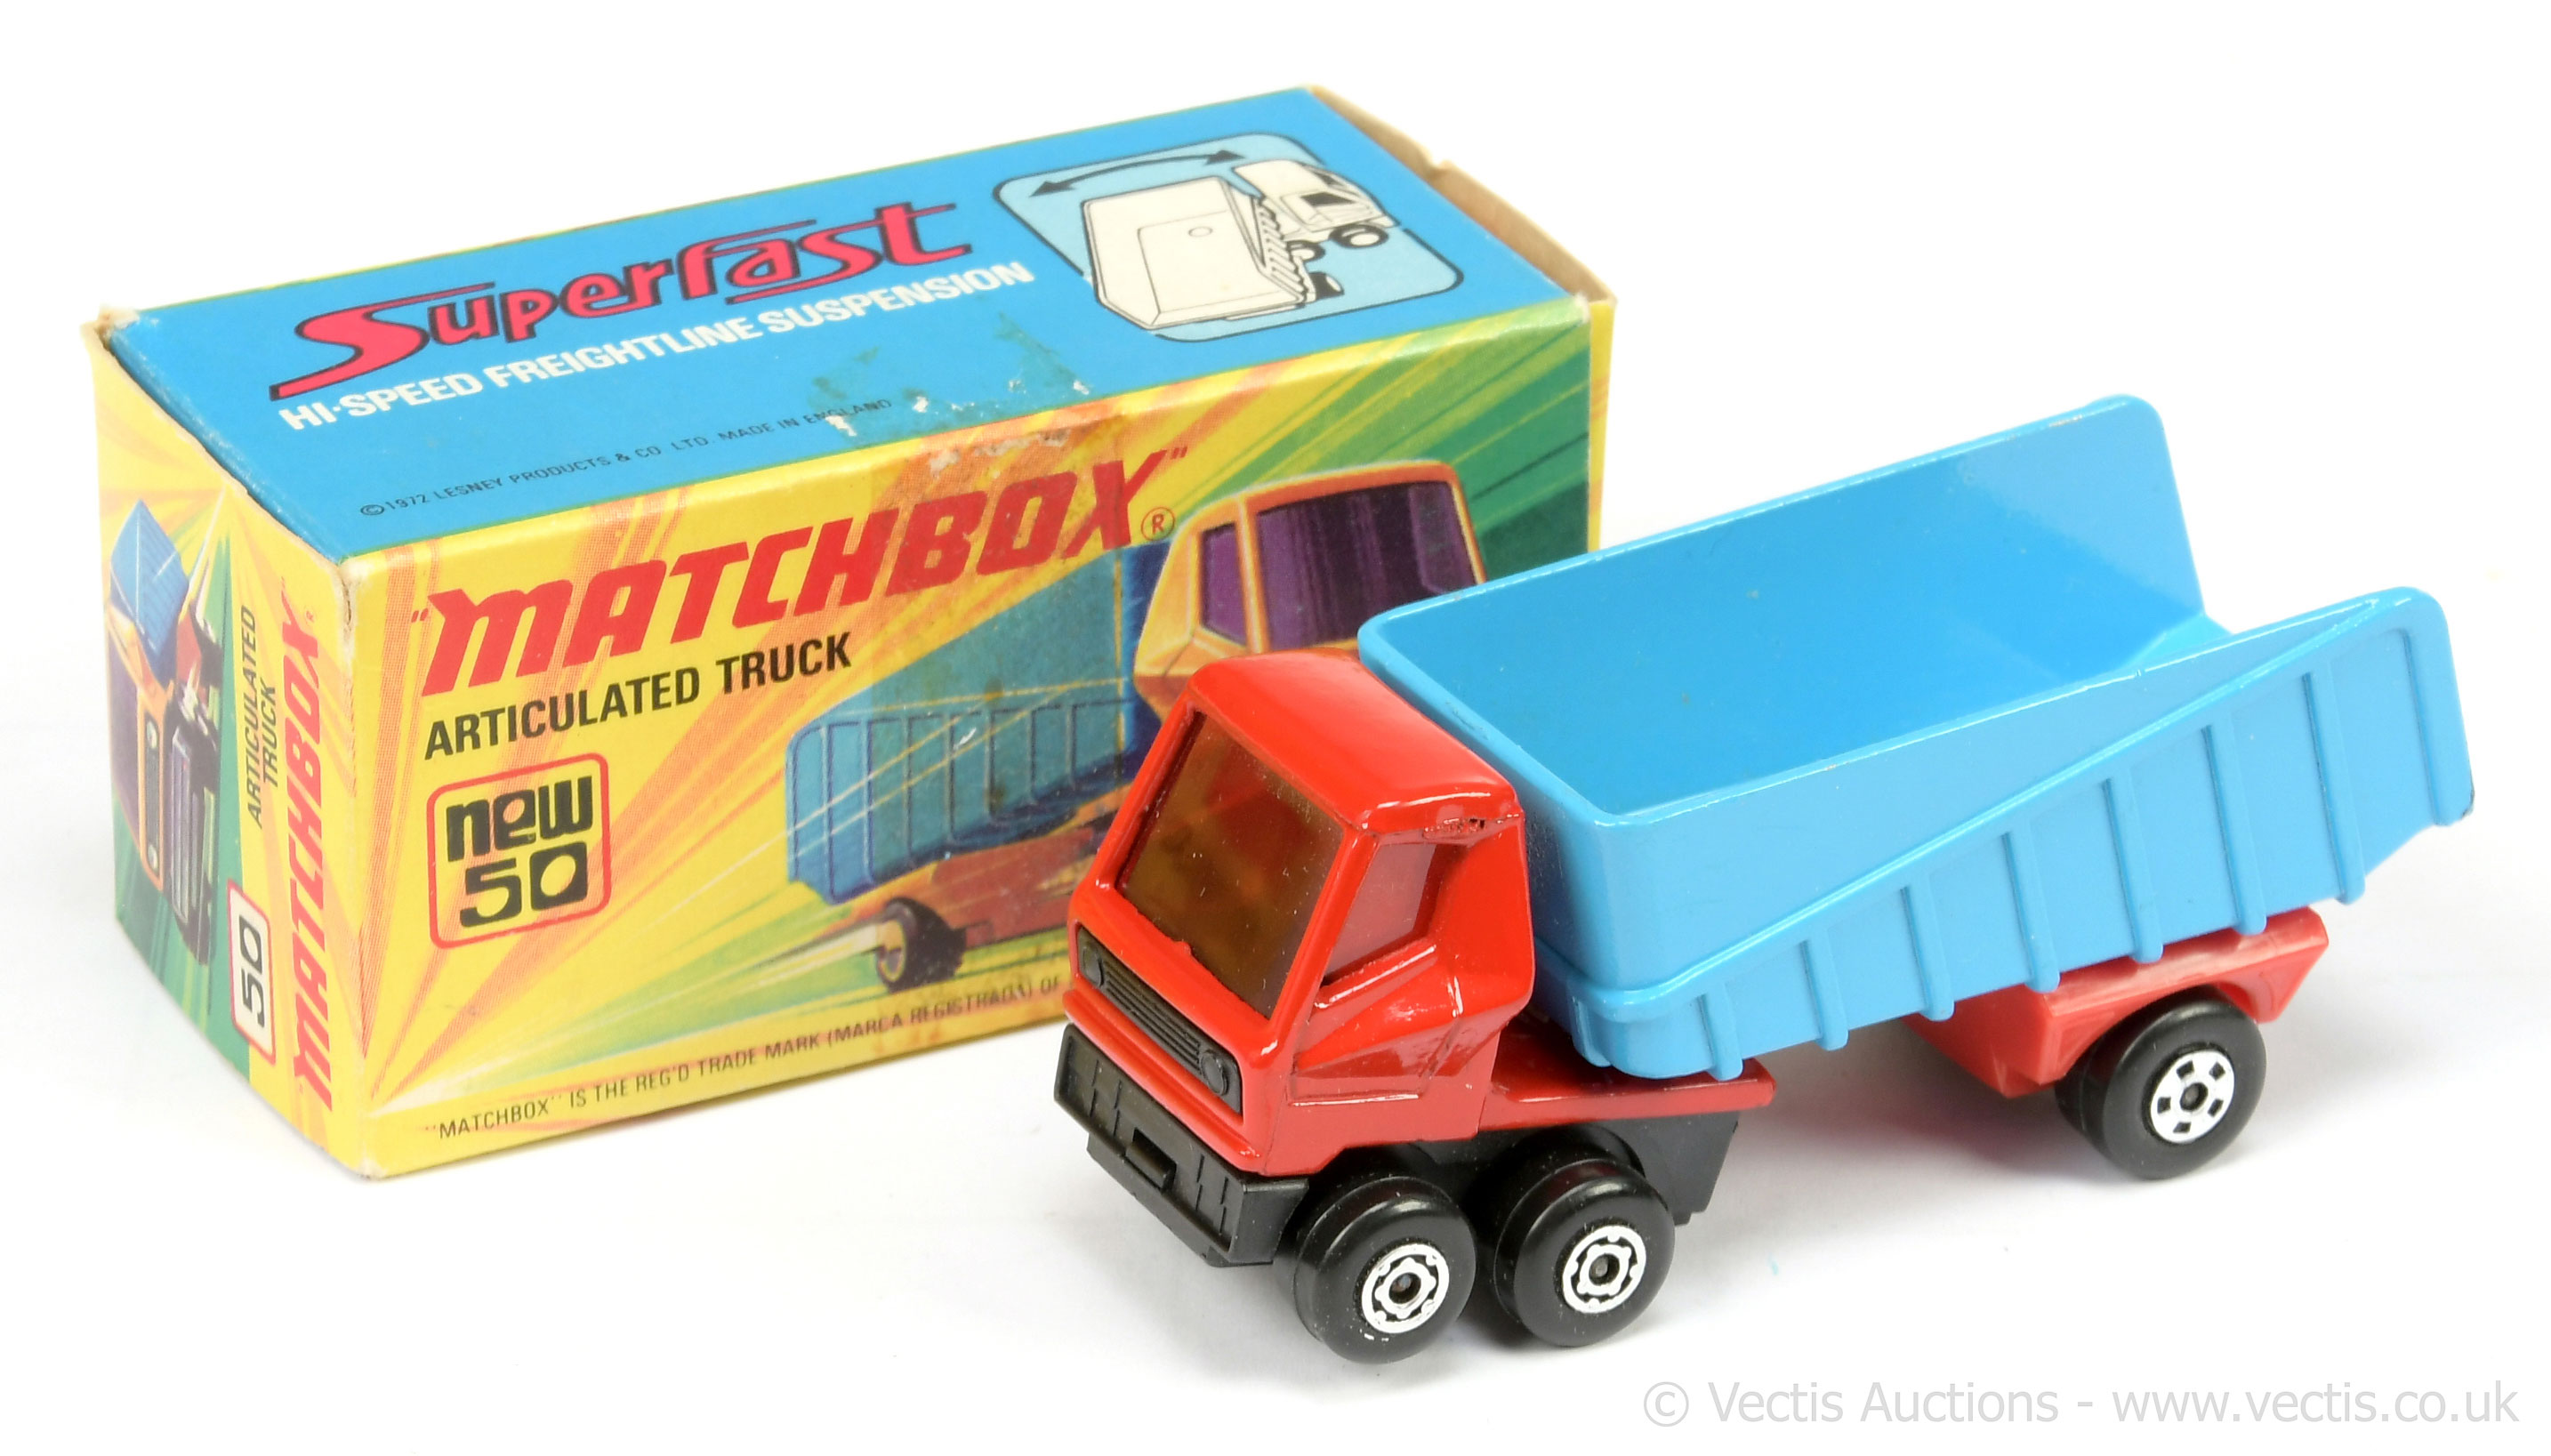 Matchbox Superfast 50b Articulated Truck factory